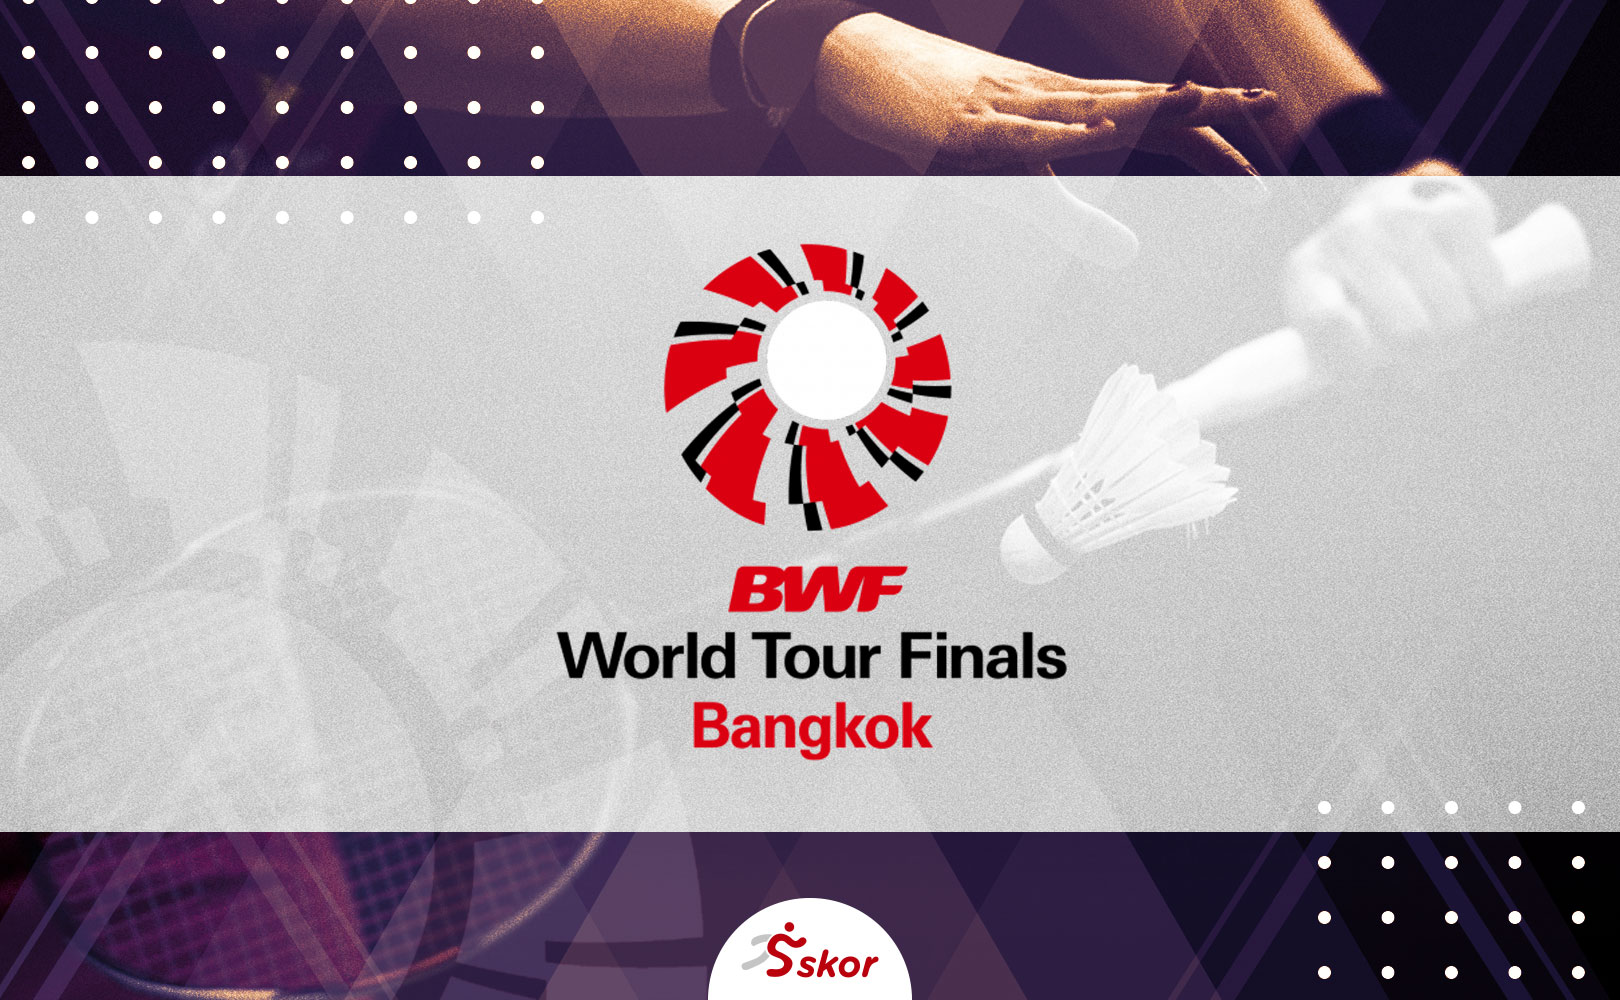 BWF World Tour Finals 2020: Kalah, Hafiz Faizal/Gloria Emanuelle Widjaja Dapat Start Buruk